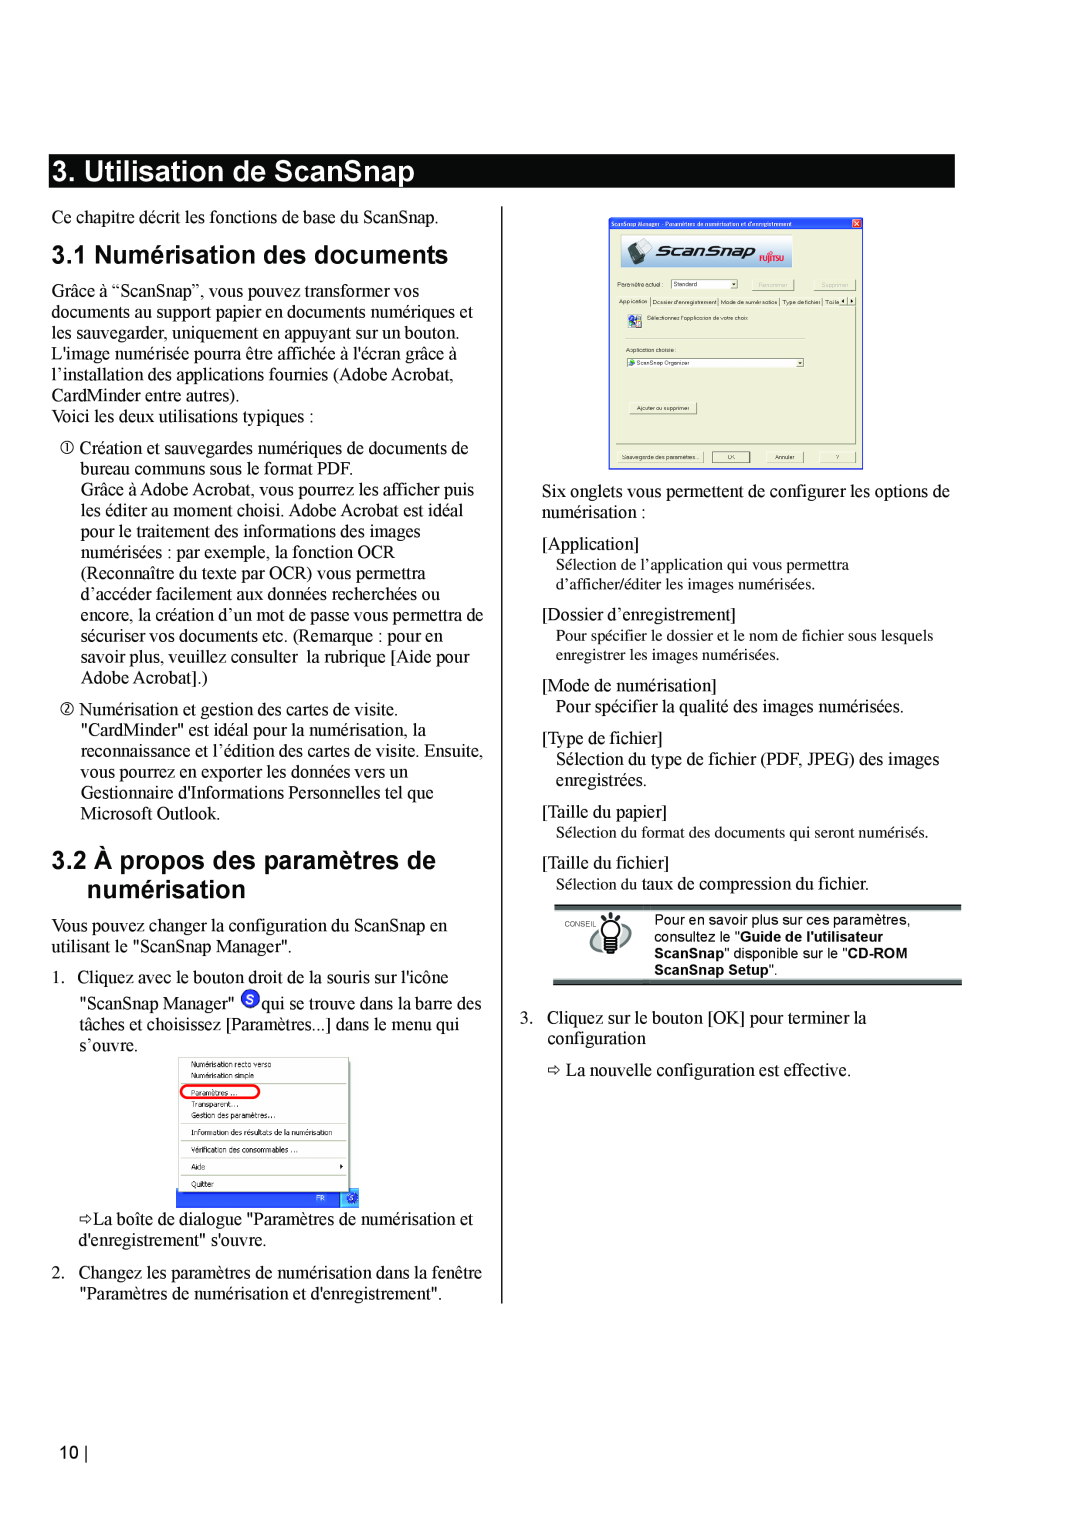 Fujitsu fi-5110EOX2 Utilisation de ScanSnap, 3.1 Numérisation des documents, 3.2 À propos des paramètres de numérisation 